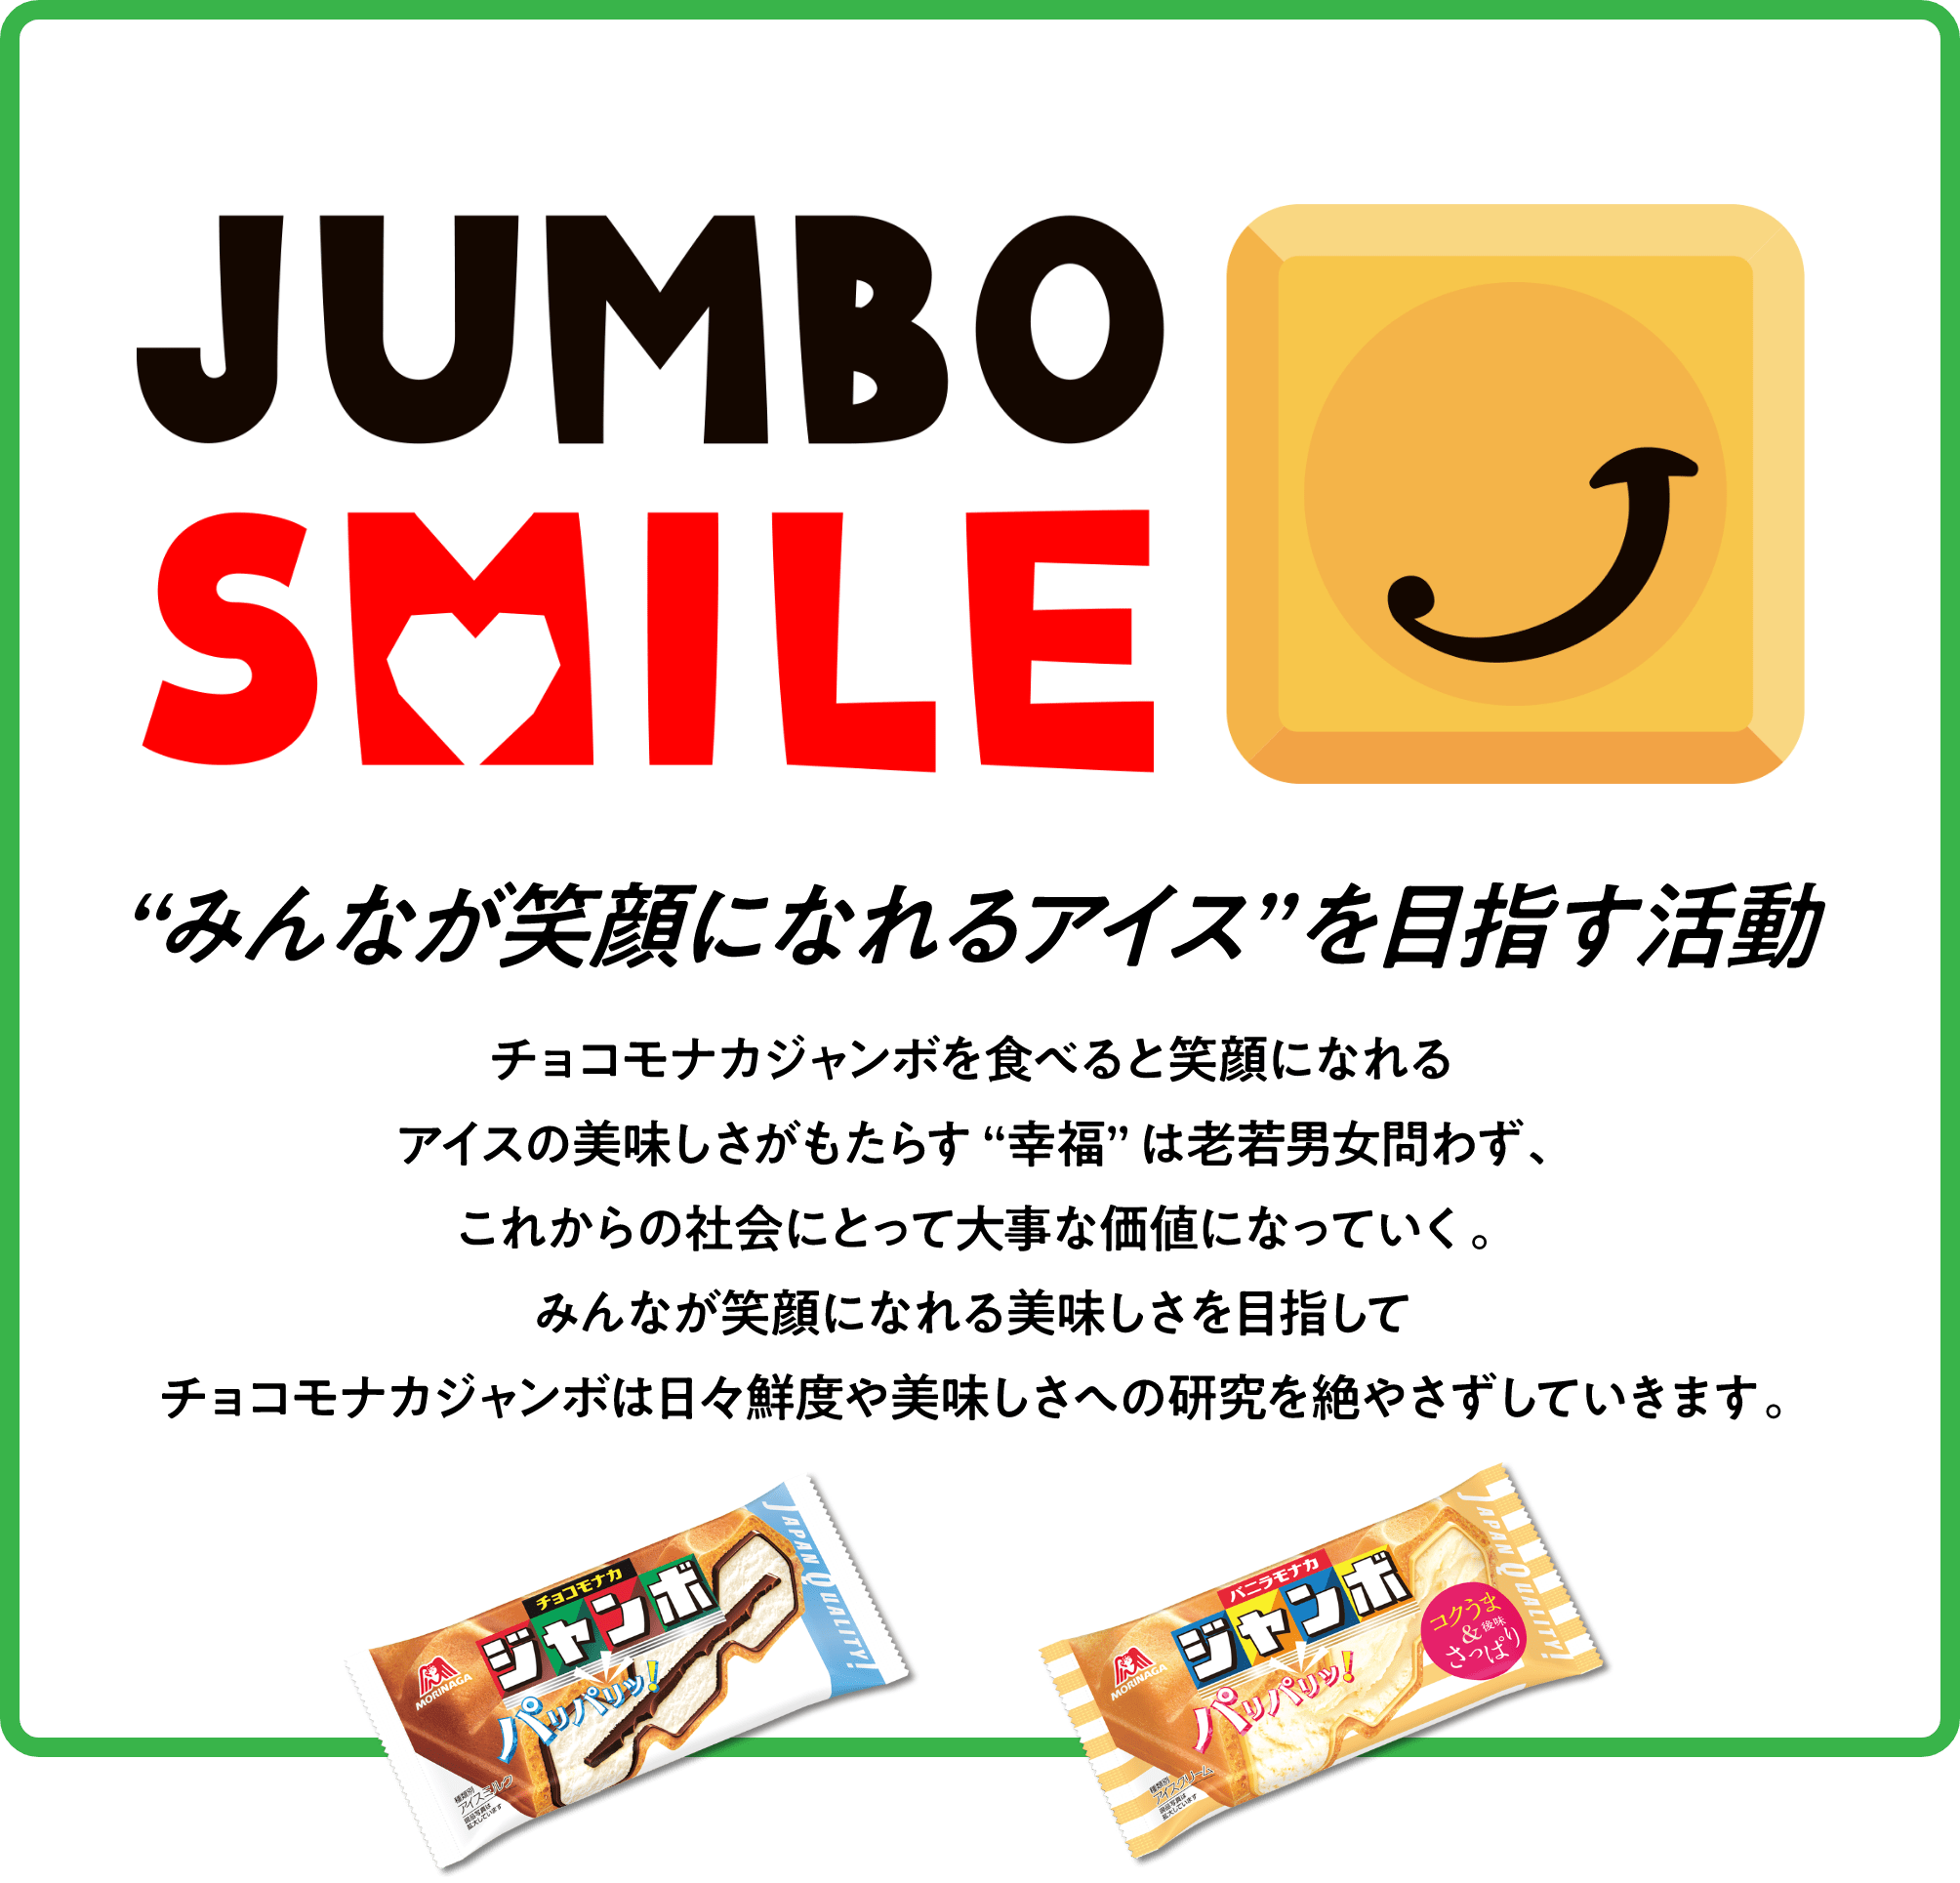 JUMBO SMILE みんなが笑顔になれるアイスを目指す活動 チョコモナカジャンボを食べると笑顔になれる アイスの美味しさがもたらす幸福は老若男女問わず。これからの社会にとって大事な価値になっていく。 みんなが笑顔になれる美味しさを目指してチョコモナカジャンボは日々鮮度や美味しさへの研究を絶やさずしていきます。